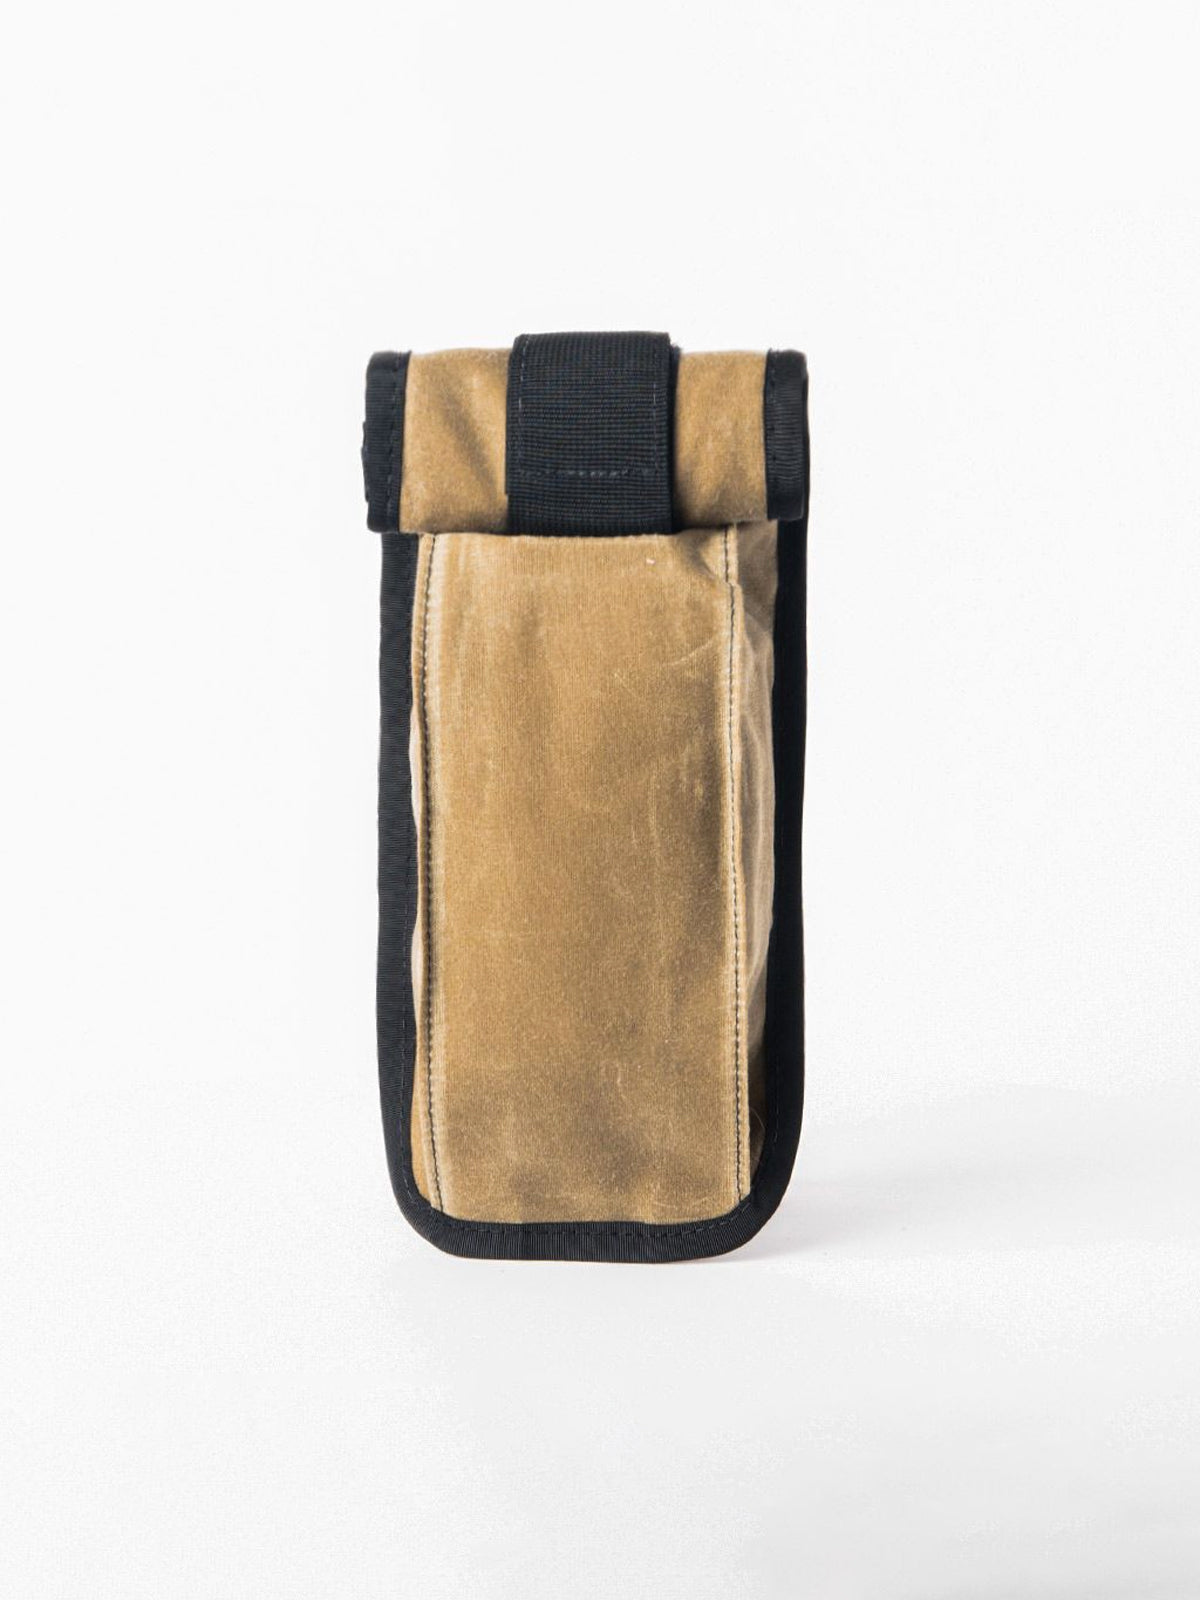 Arkiv Vertical Rolltop Pocket by Mission Workshop - Weerbestendige tassen & technische kleding - San Francisco & Los Angeles - Gebouwd om te weerstaan - Voor altijd gegarandeerd